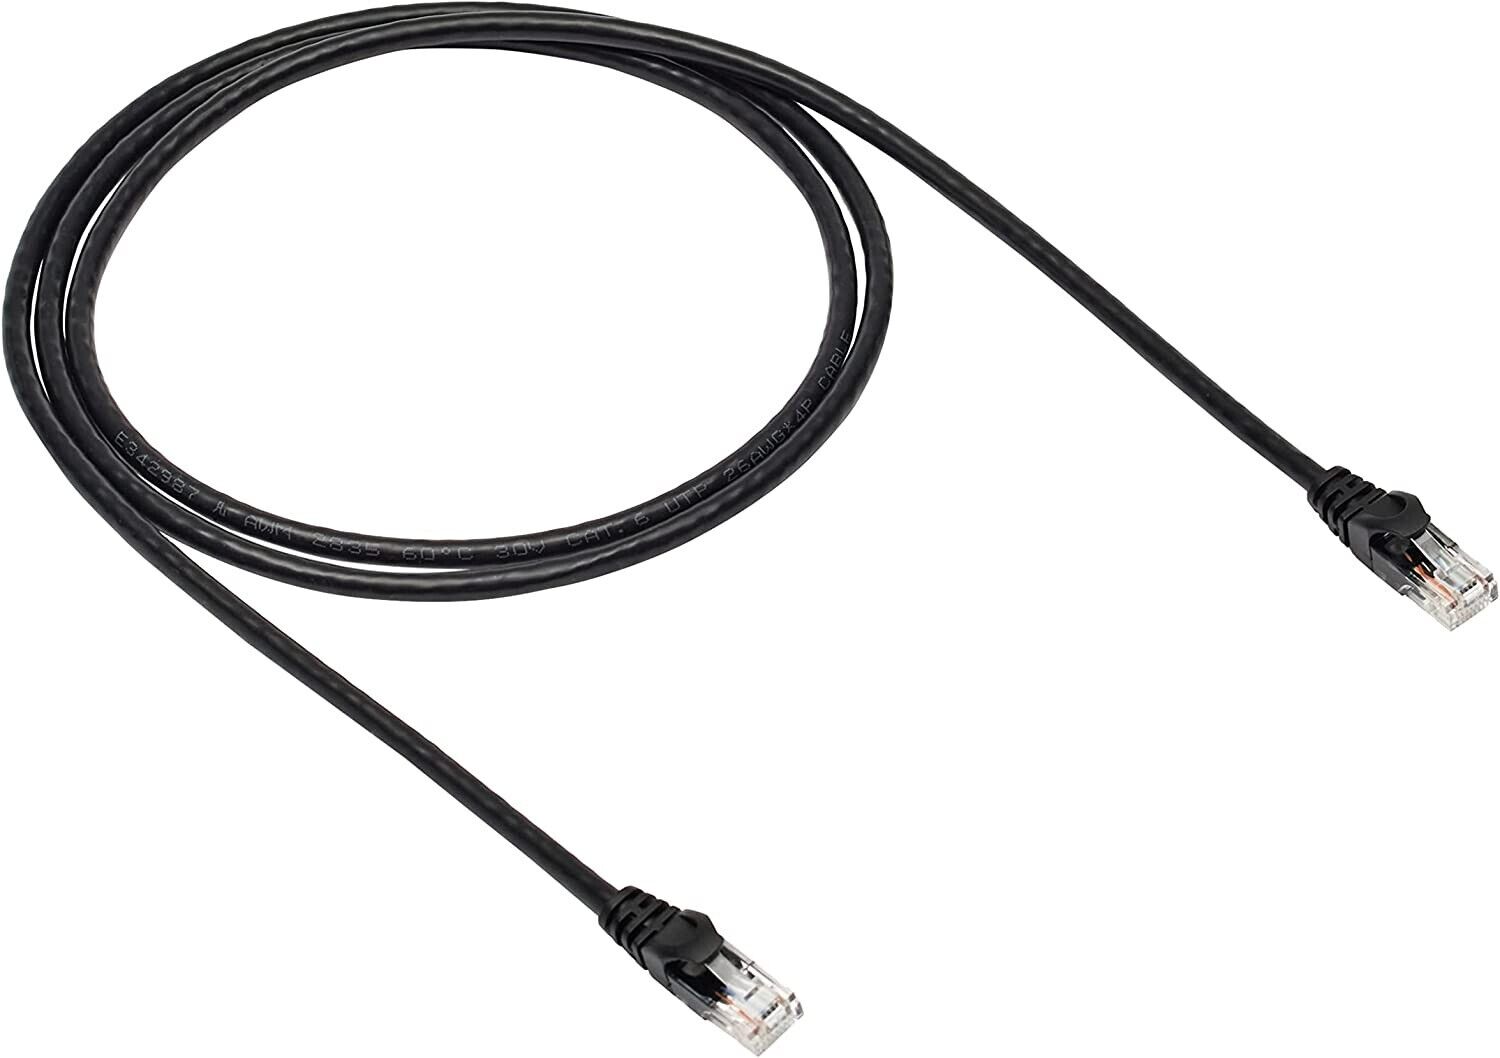 Amazon Basics RJ45 Cat-6 Gigabit Ethernet Patch Internet Cable - 10-Pack, 5 Foot